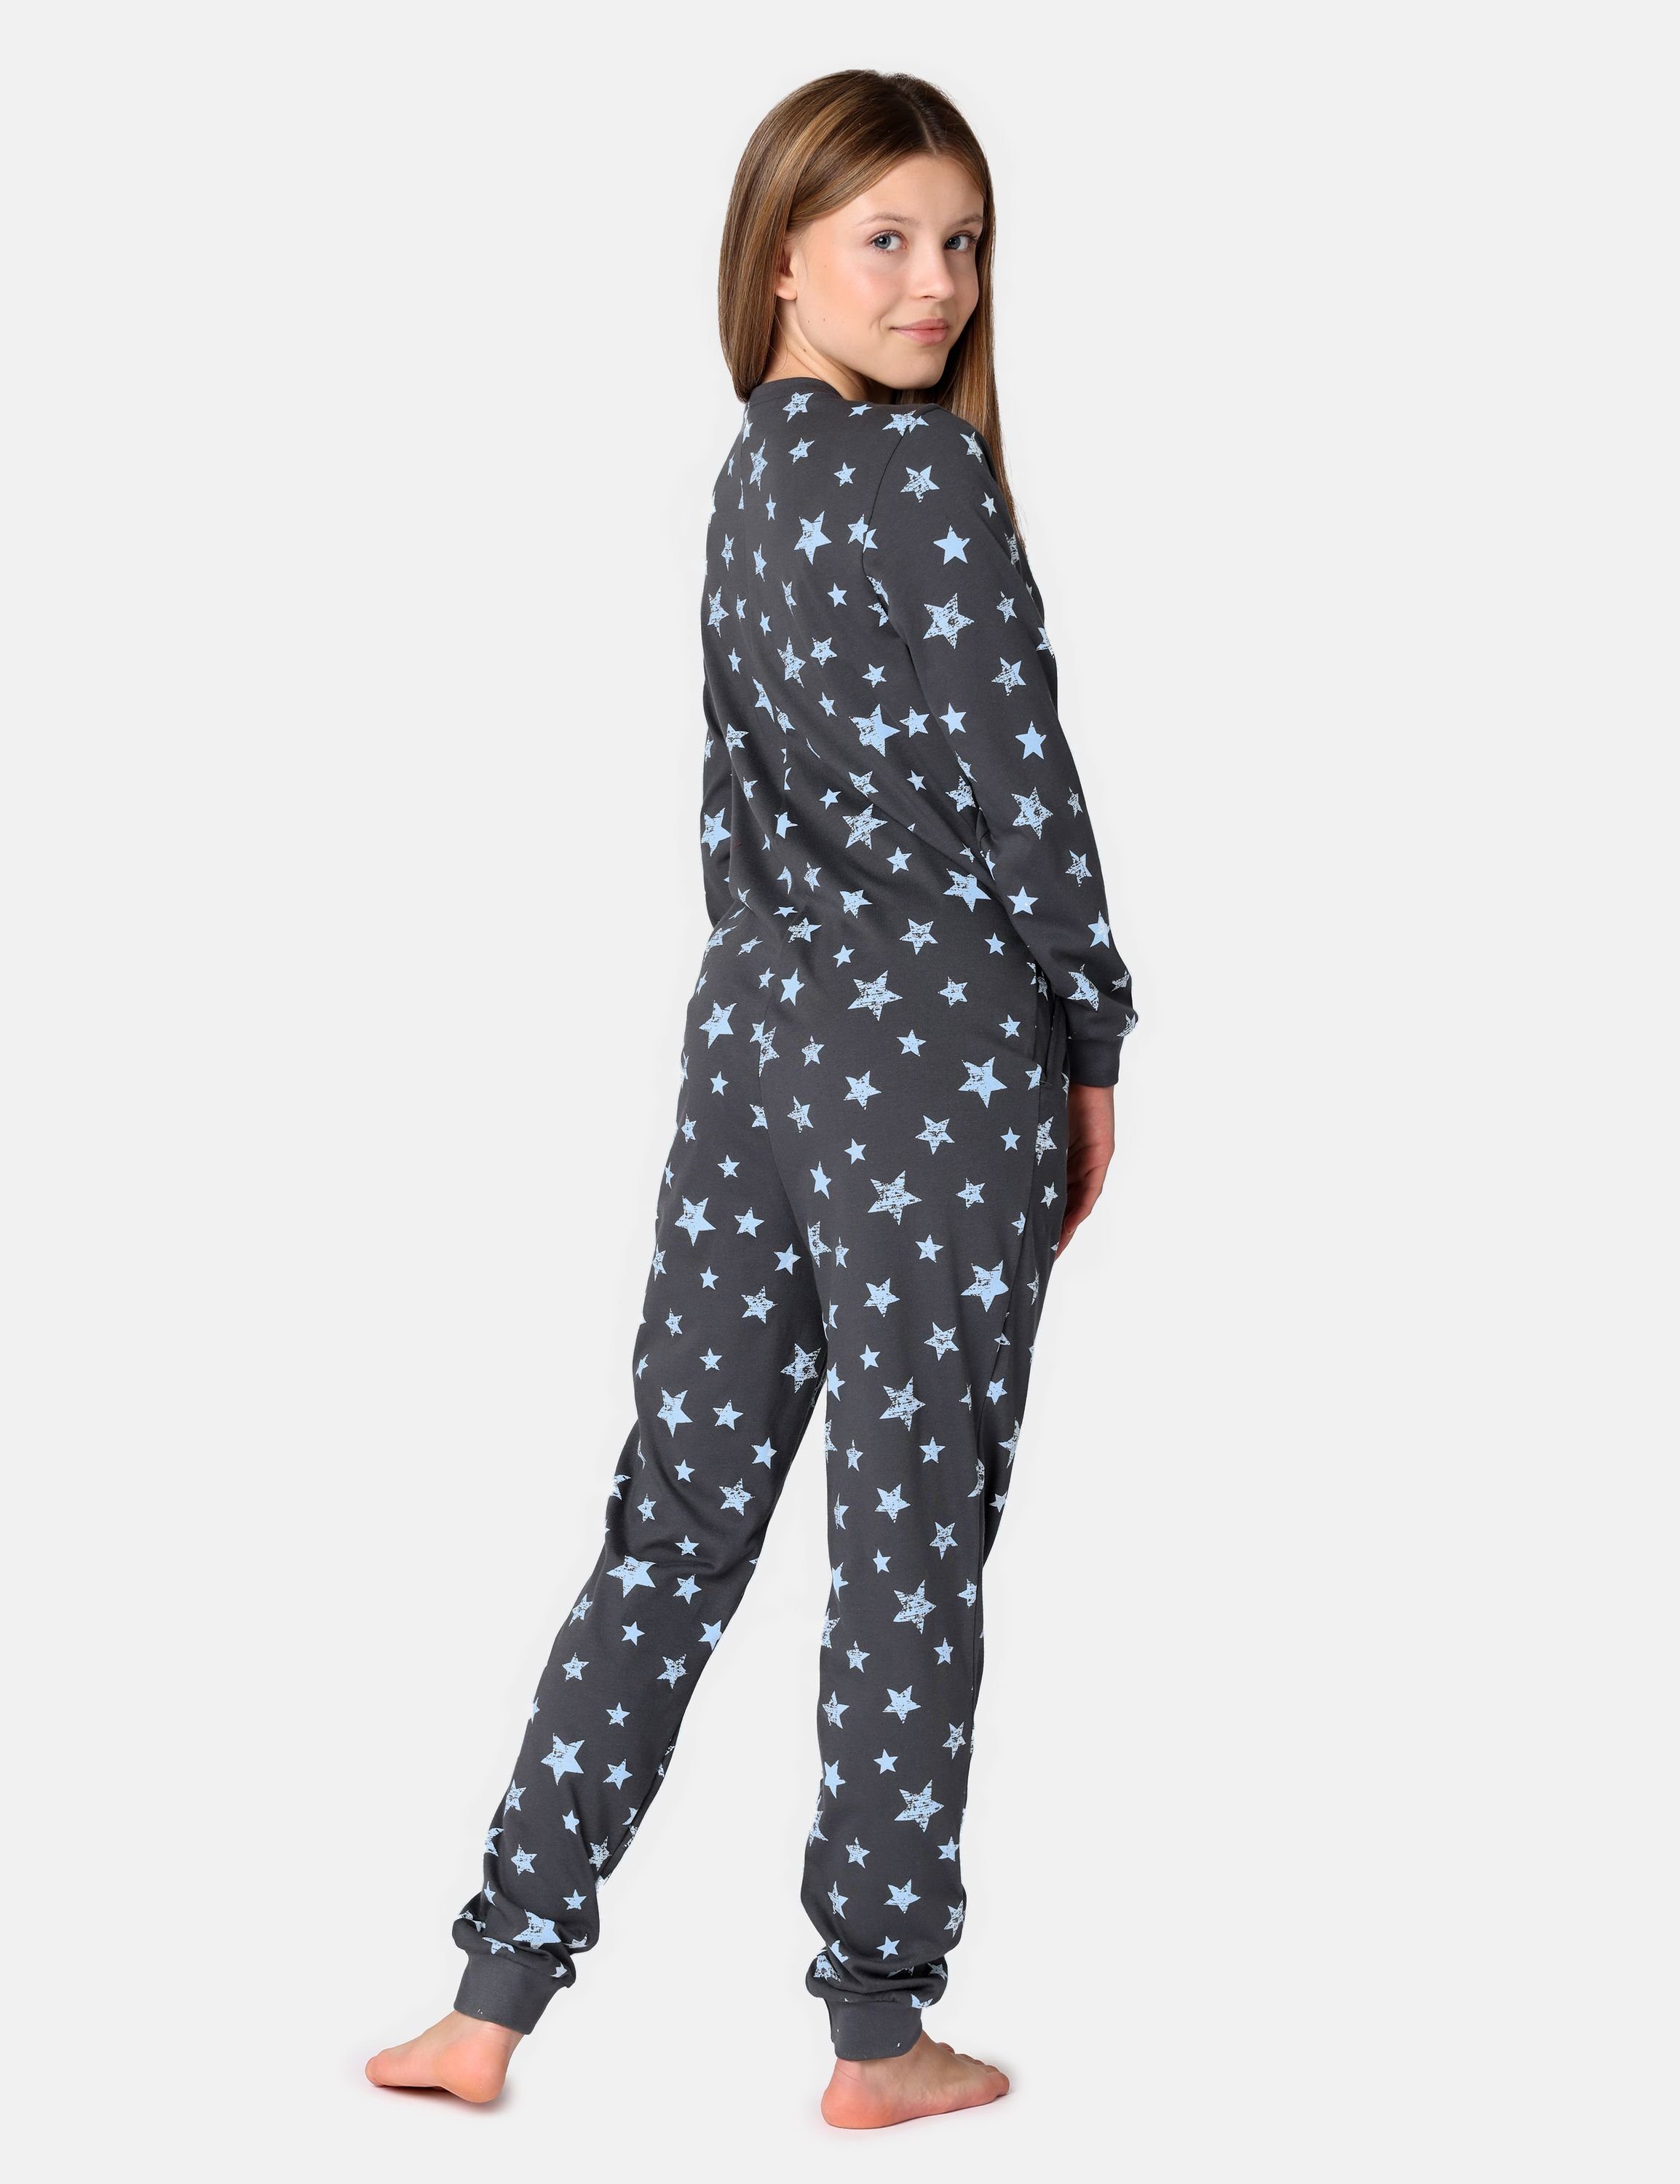 Schlafoverall Merry Sterne Schlafanzug Schlafanzug Style Grafit/Blau MS10-235 Jugend Mädchen